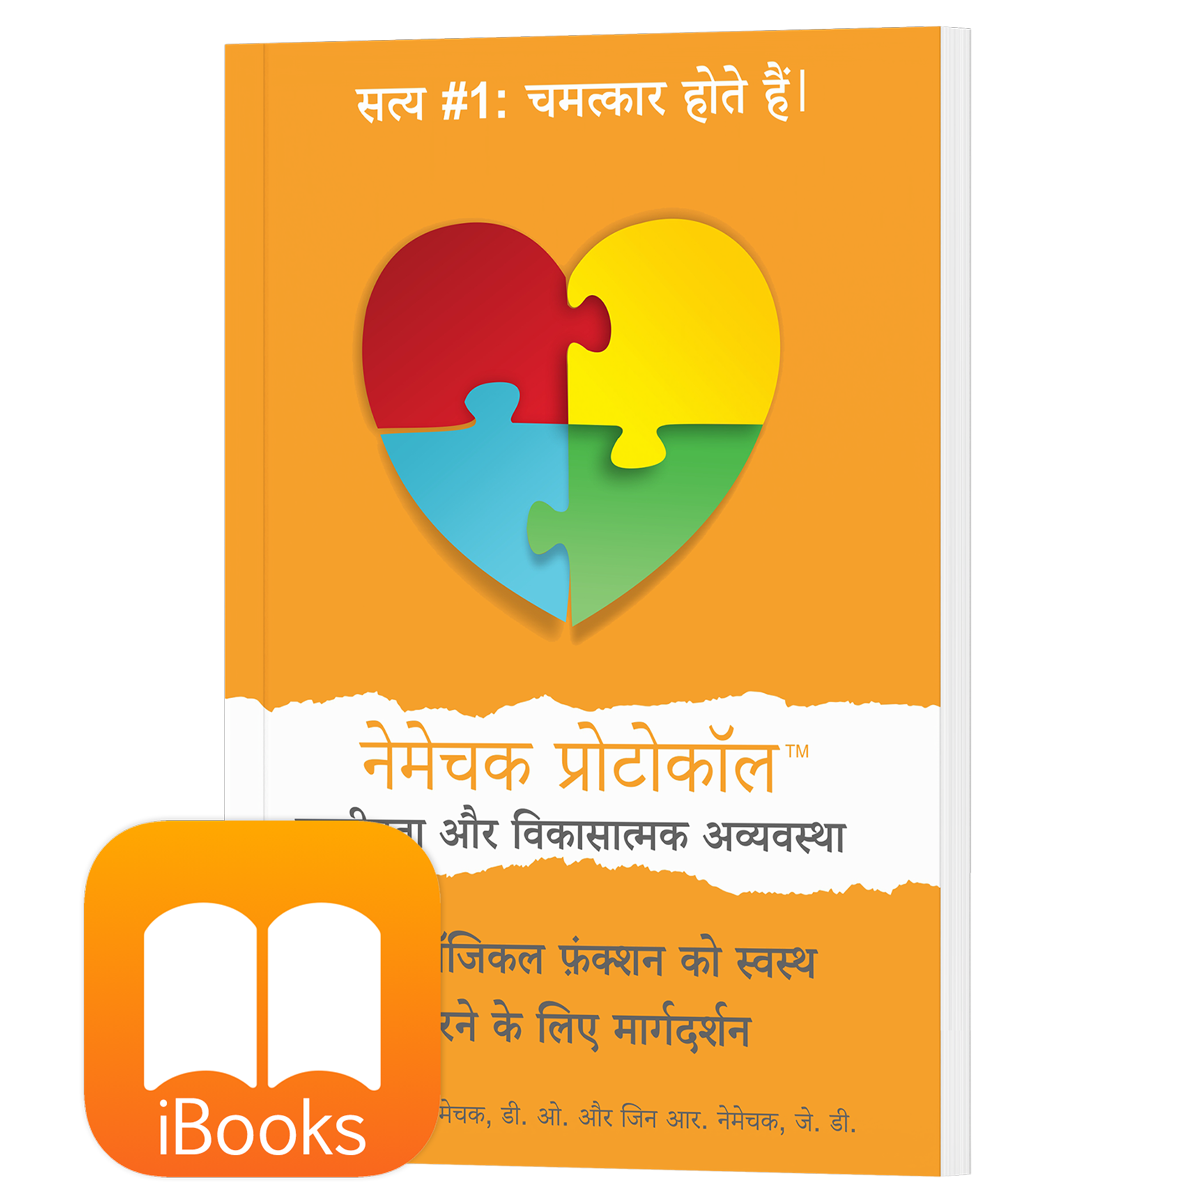 पहला संस्करण (Hindi, iPhone/iPad/EPUB Reader) नीकेस्क प्रोटोकॉल ™ फ़ॉर ऑटि शम और विकास संबंधी विकार